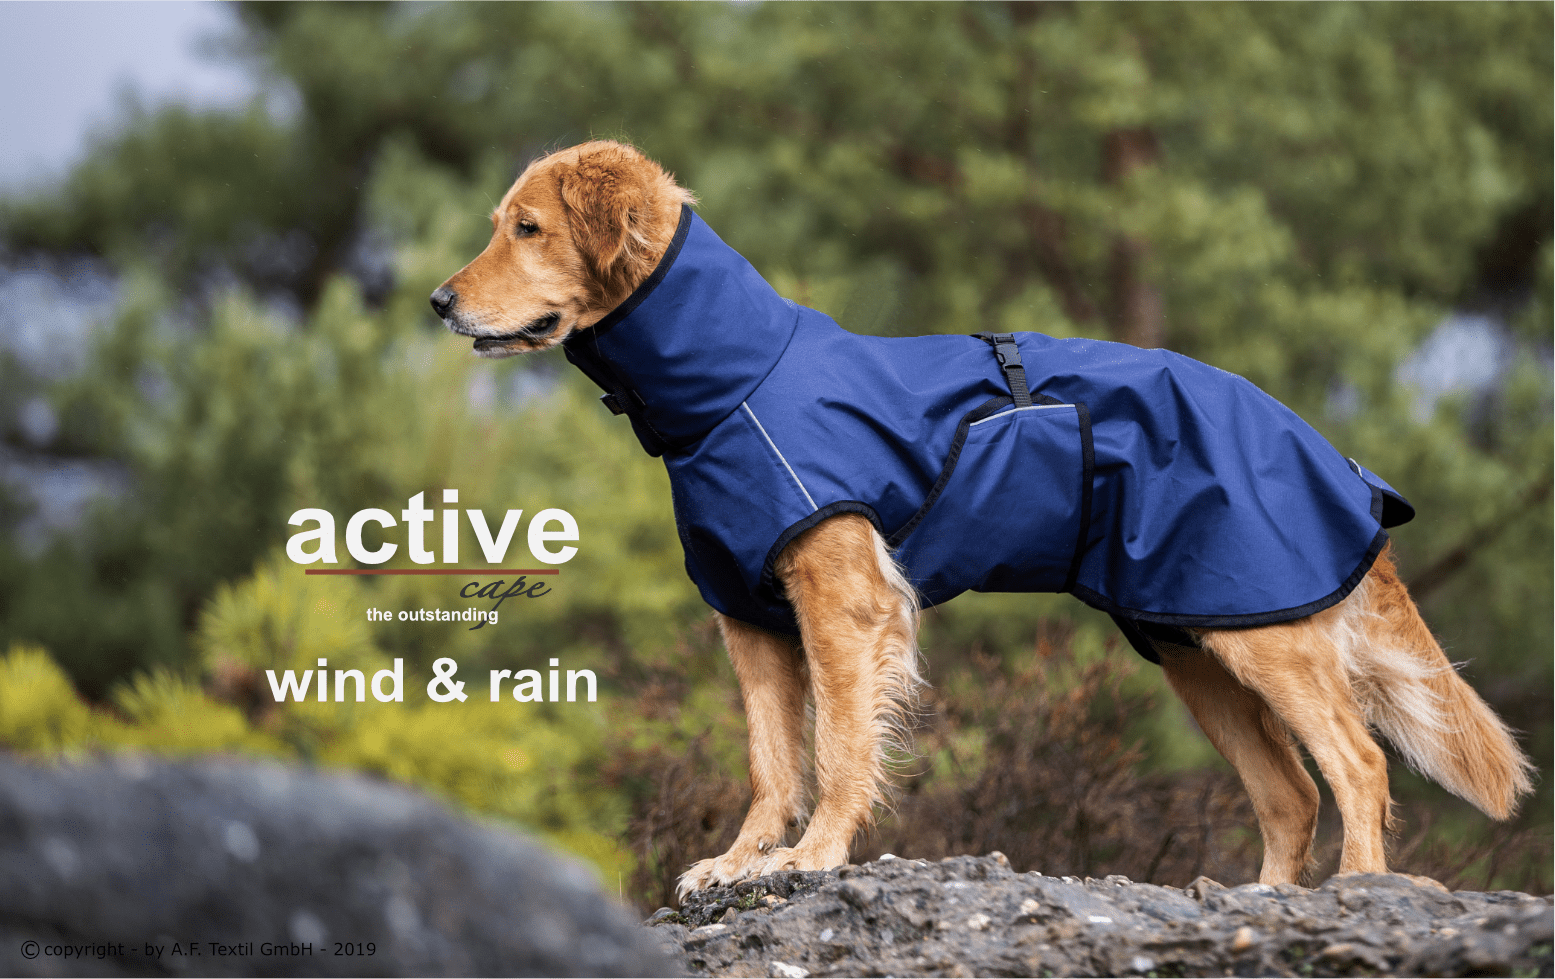 active-cape-wind-rain-blau3